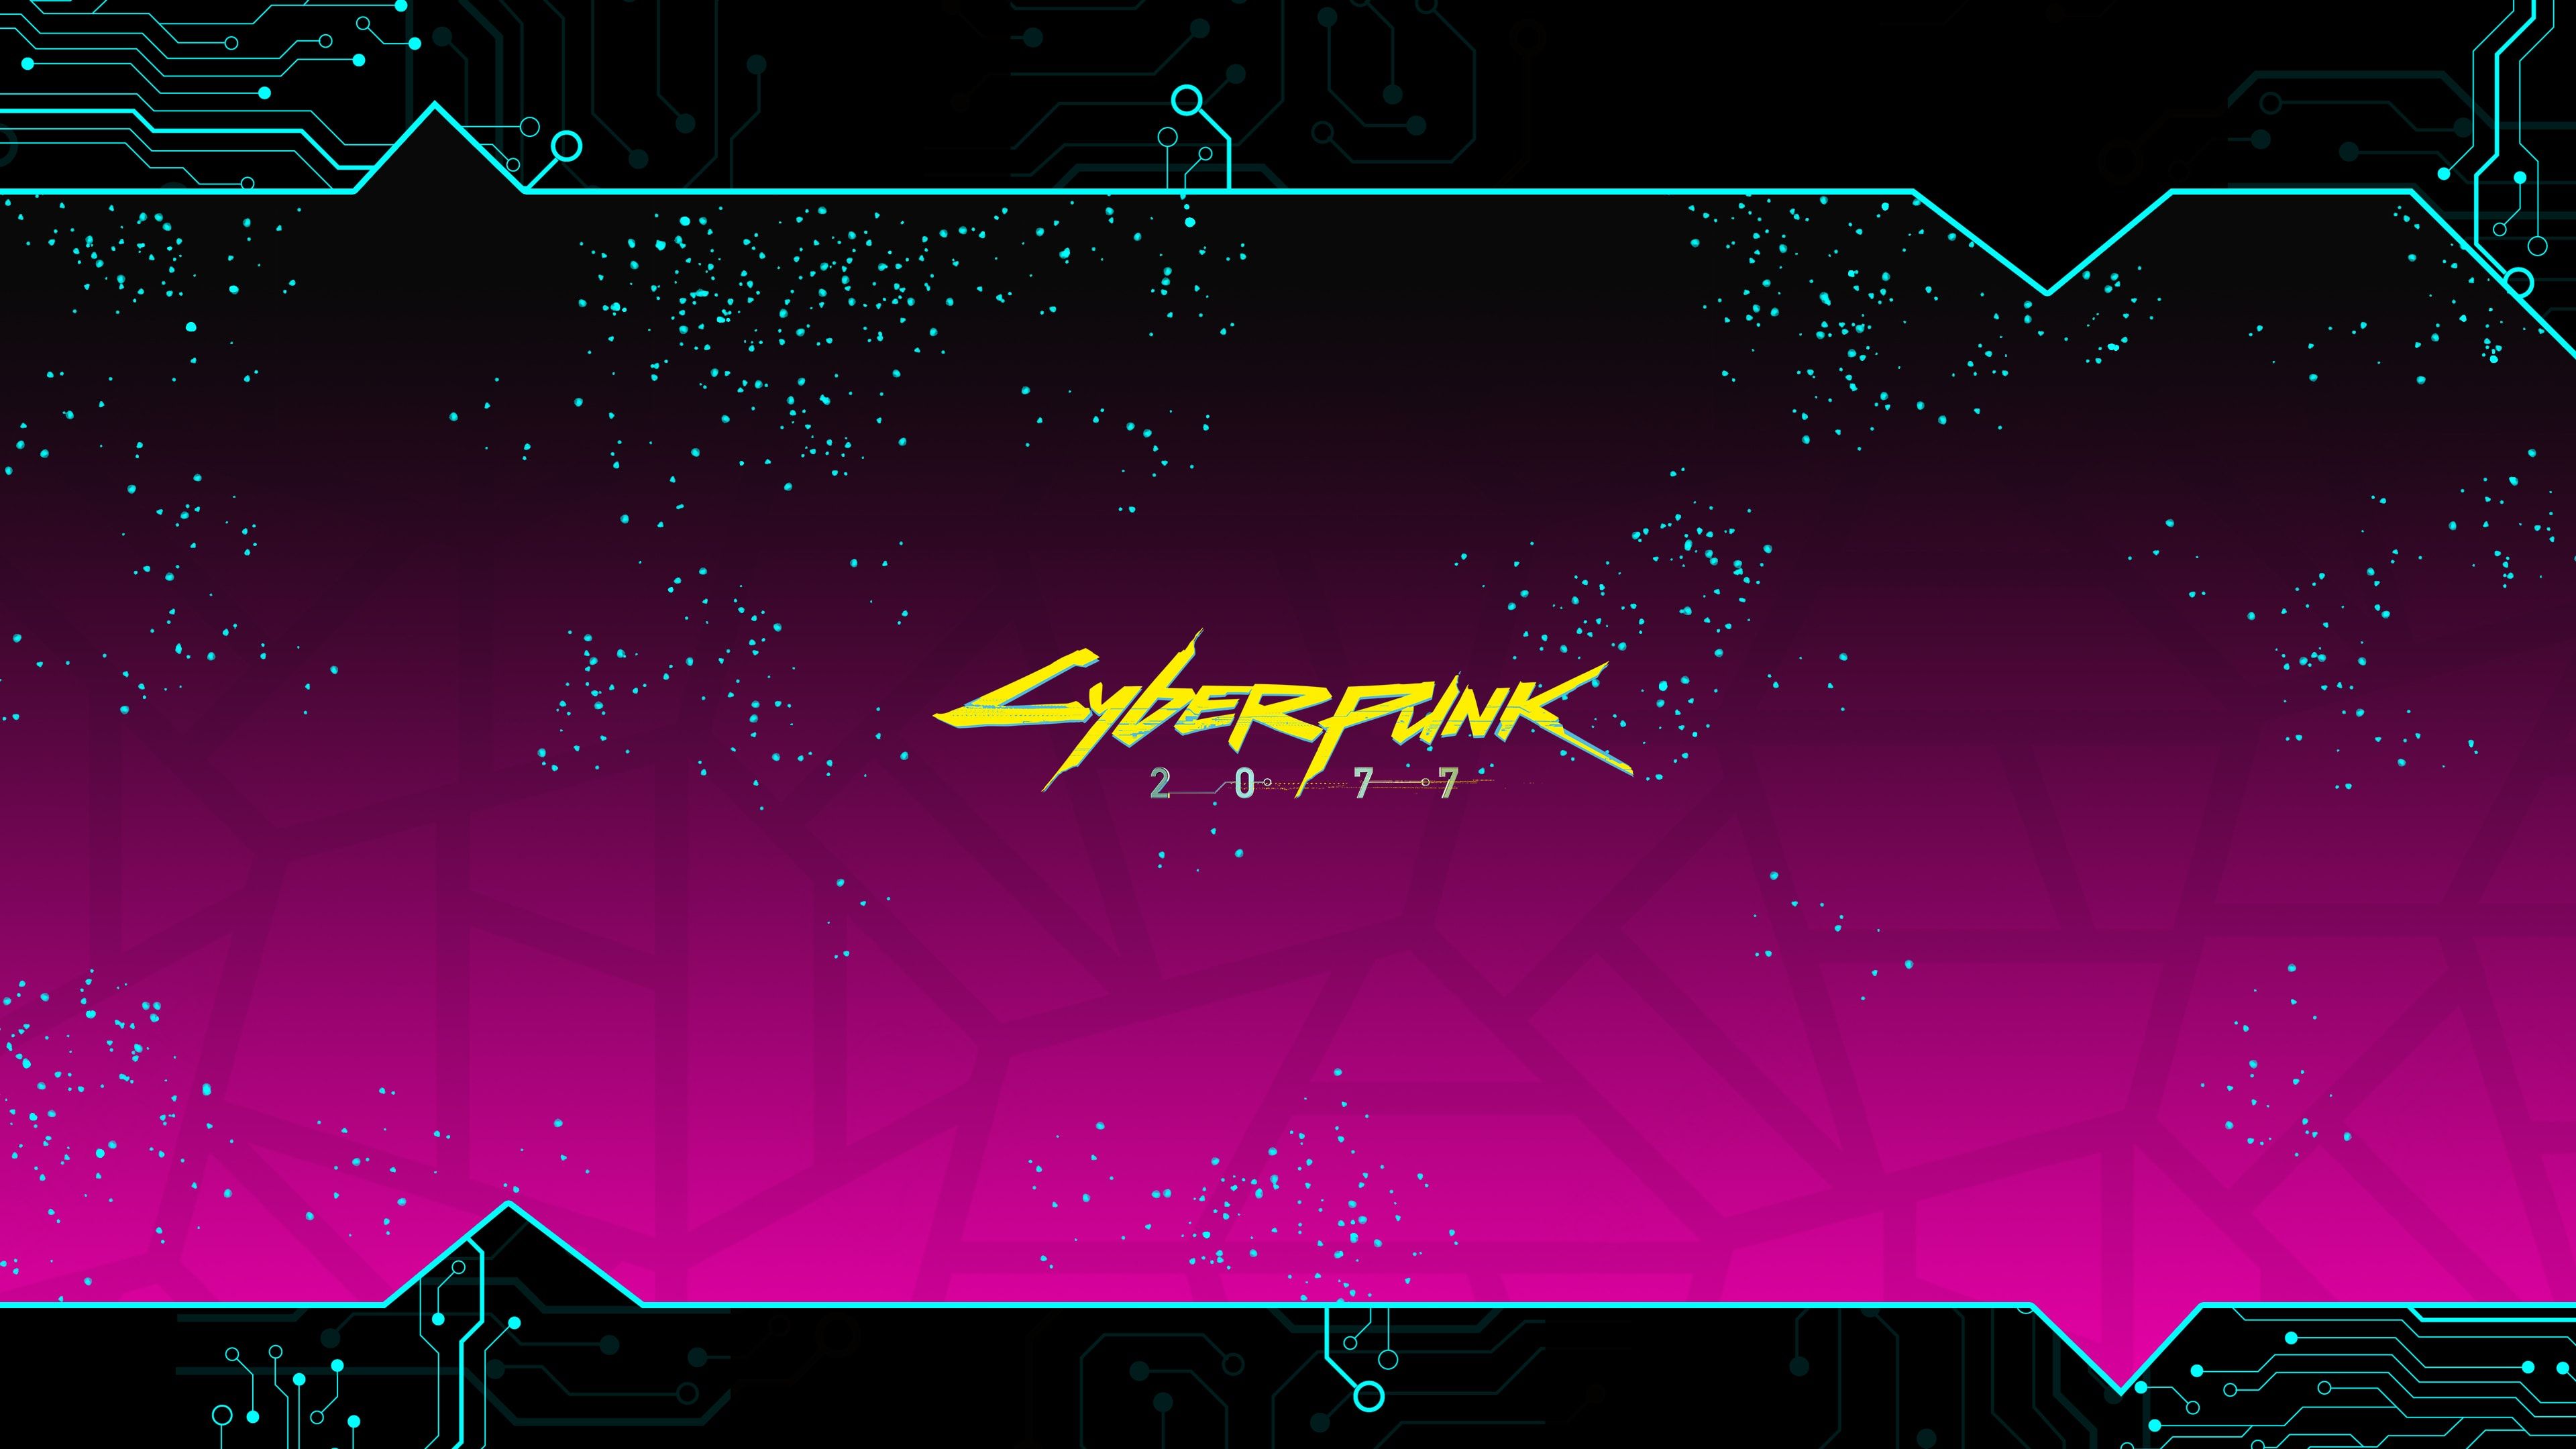 Cyberpunk 2077 2  Desktop wallpapers, HD image, 4K